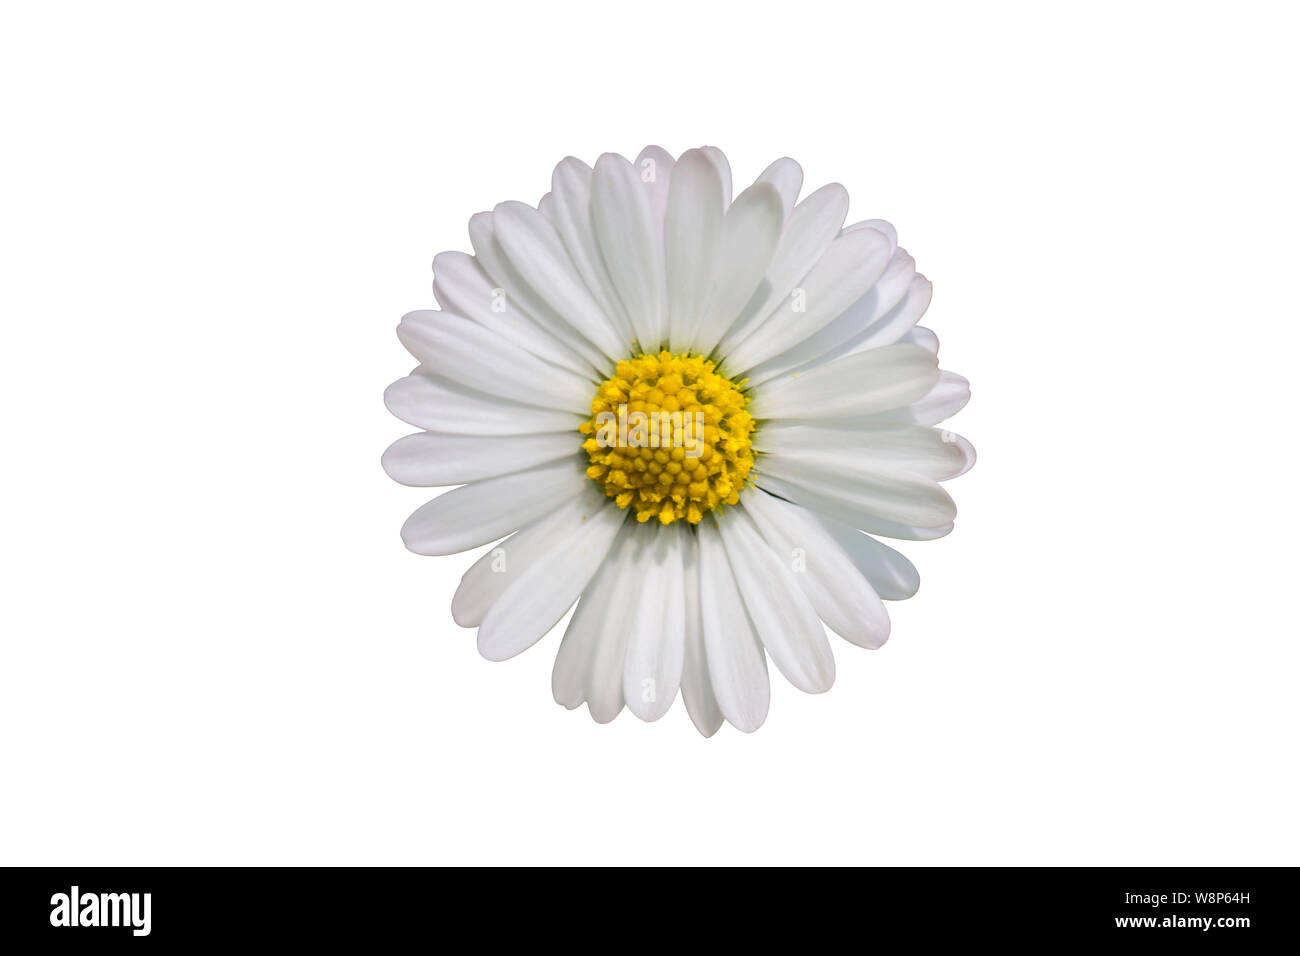 Single daisy flower isolated on white background Stock Photo